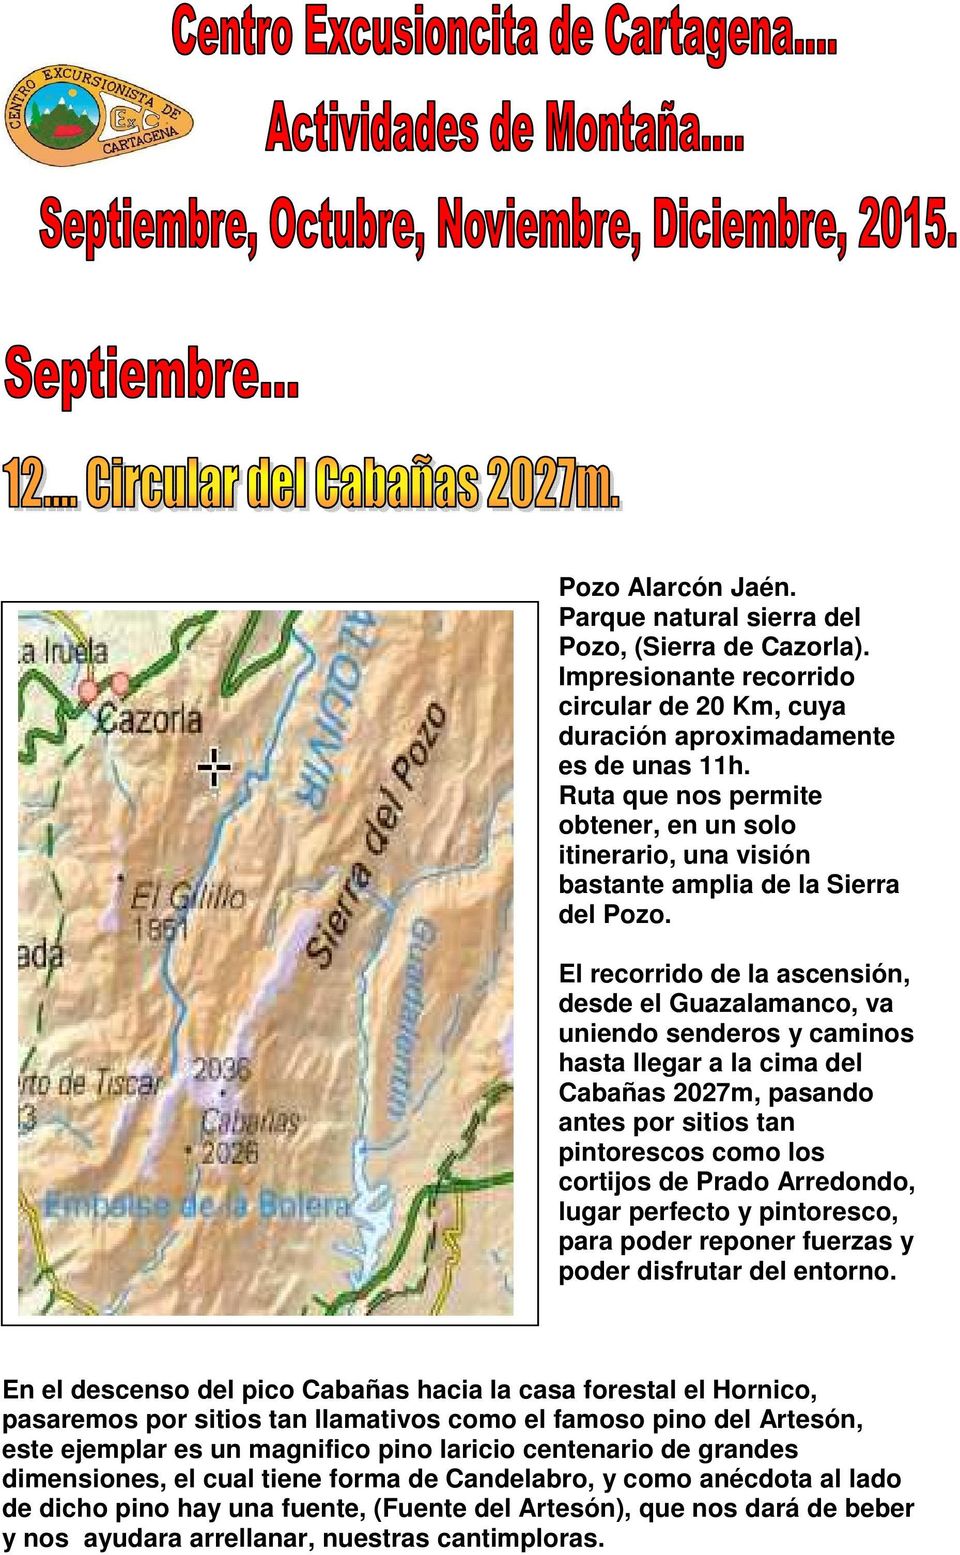 El recorrido de la ascensión, desde el Guazalamanco, va uniendo senderos y caminos hasta llegar a la cima del Cabañas 2027m, pasando antes por sitios tan pintorescos como los cortijos de Prado